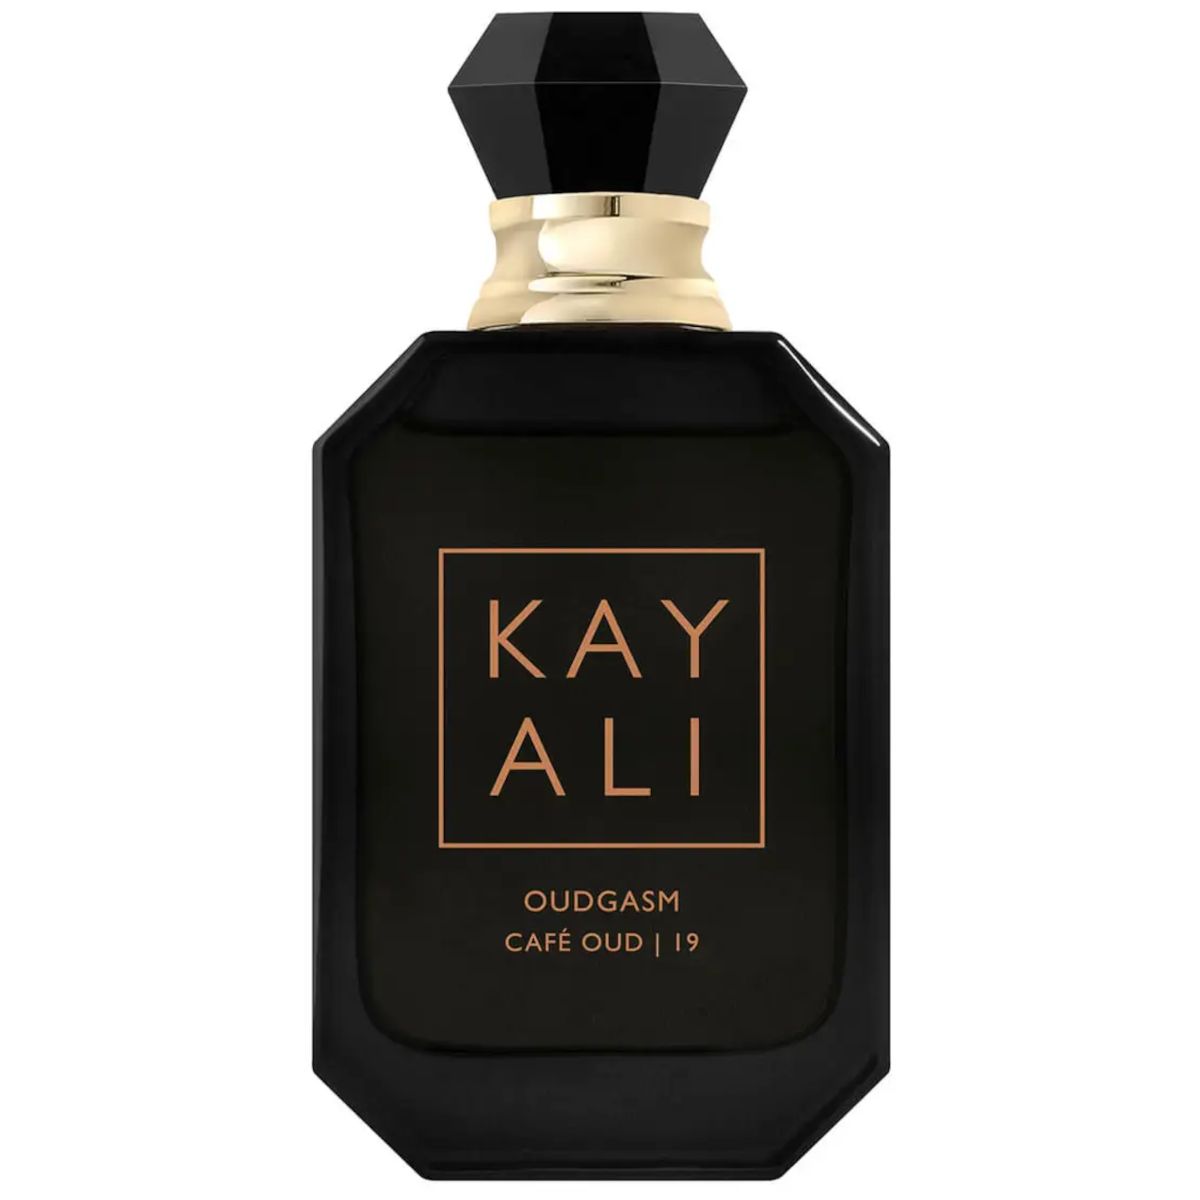 Kayali Oudgasm eau de parfum intense Café Oud